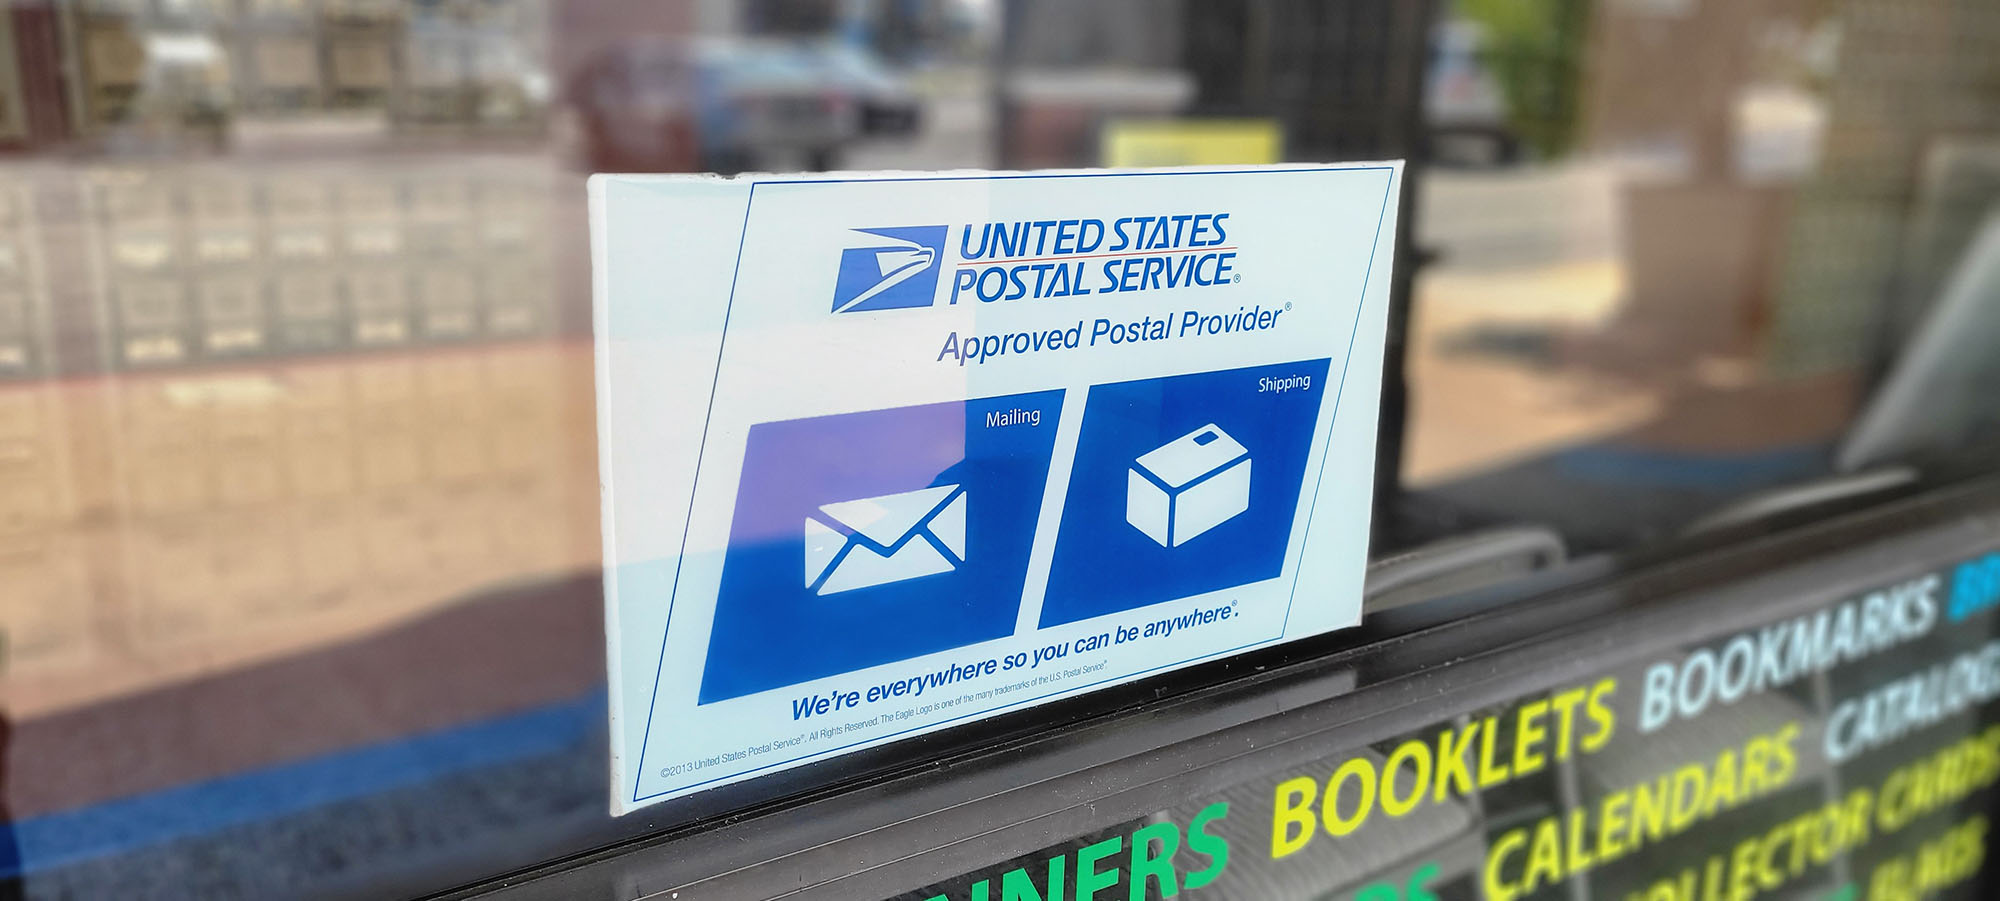 USPS Approved Postal Provider